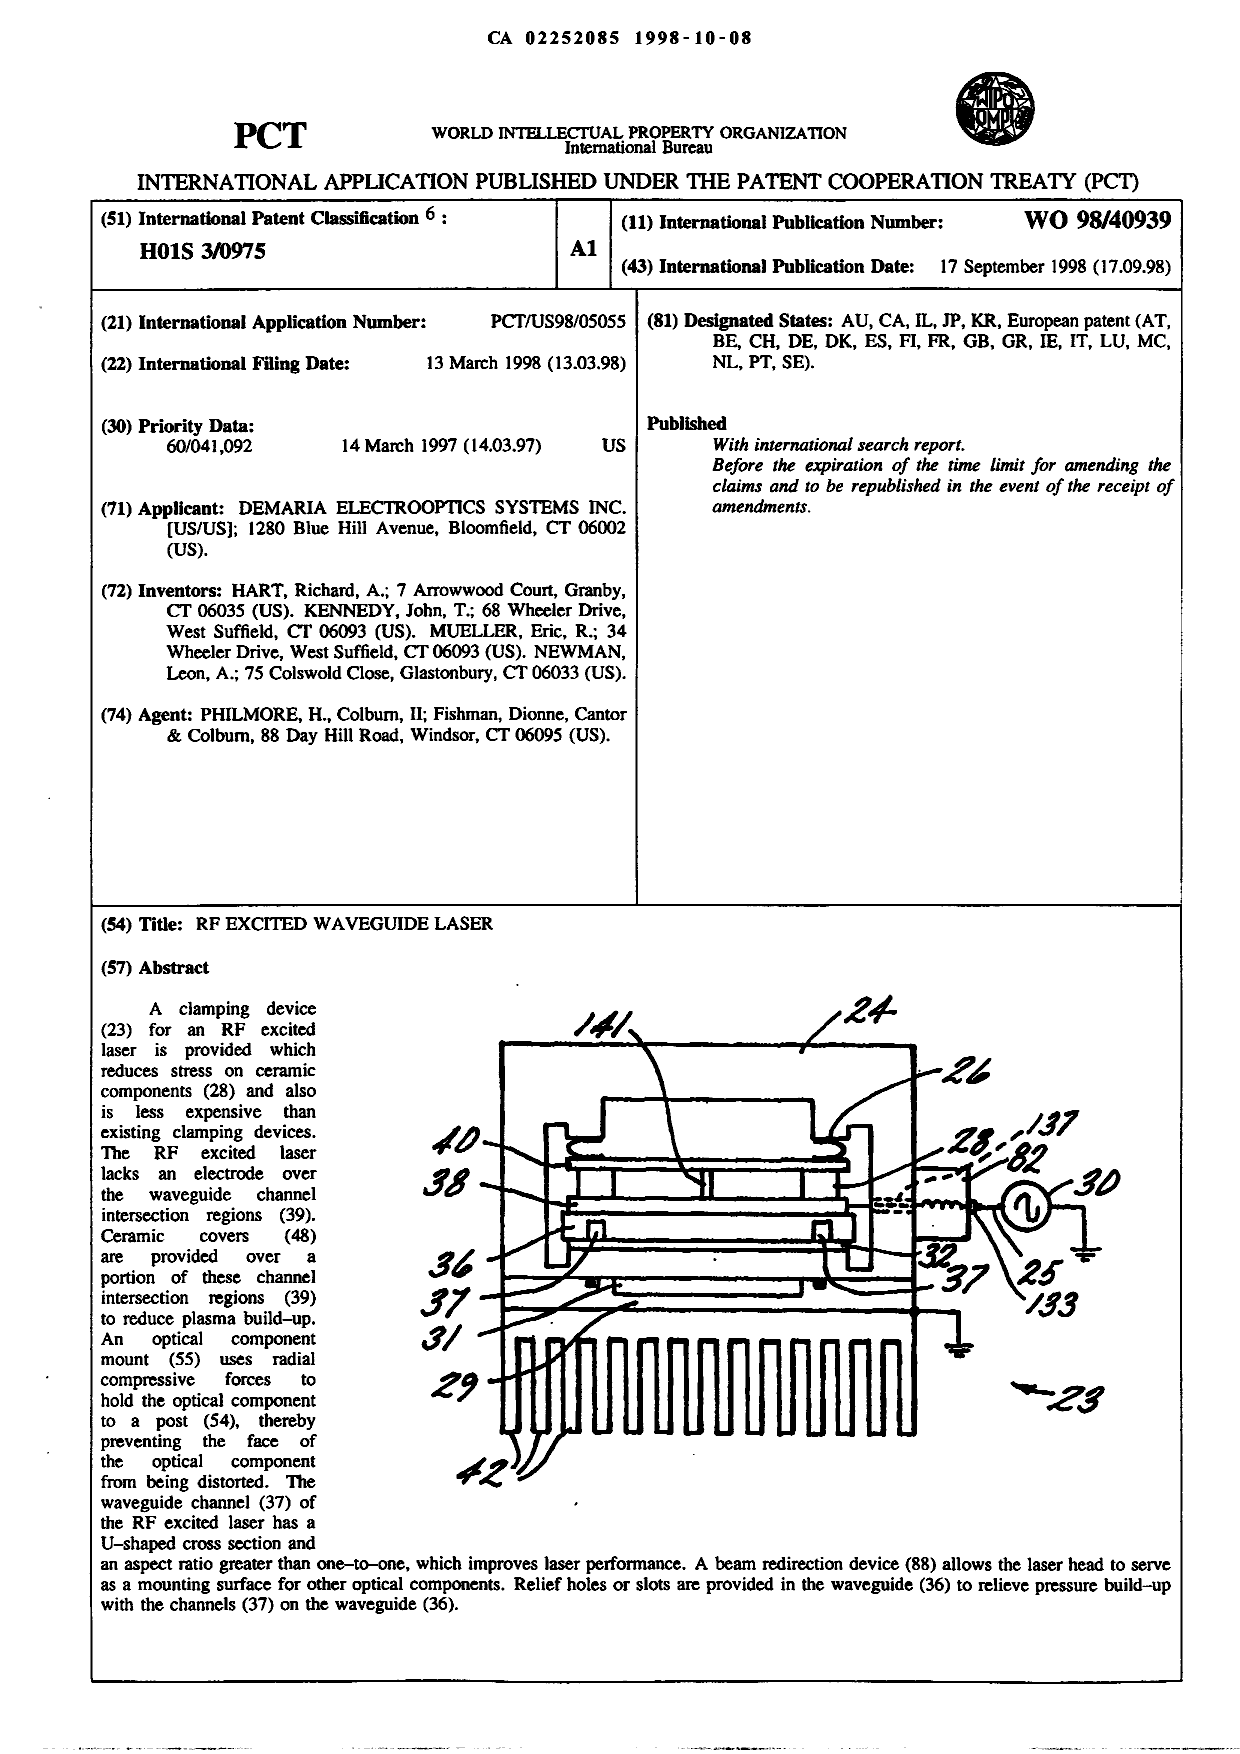 Document de brevet canadien 2252085. Abrégé 19981008. Image 1 de 1